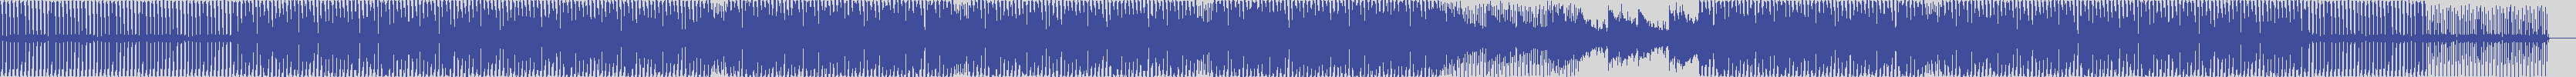 atomic_recordings [AR008] Mil - Changes [Original Mix] audio wave form